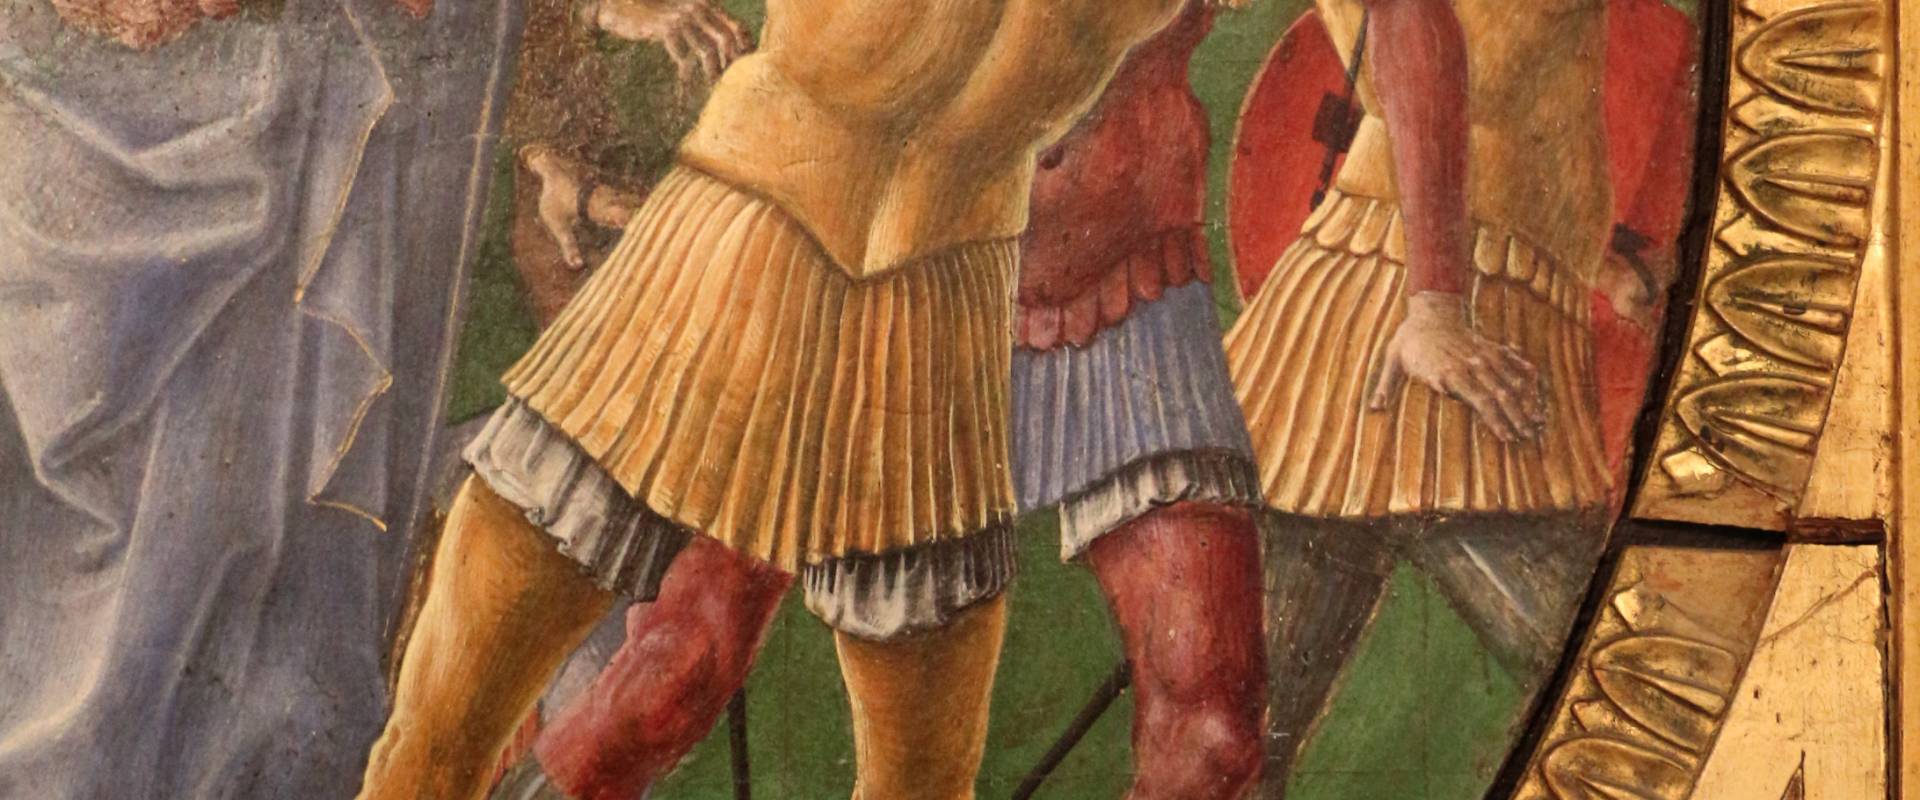 Cosmè tura, giudizio di san maurelio, 1480, da s. giorgio a ferrara, 08 foto di Sailko